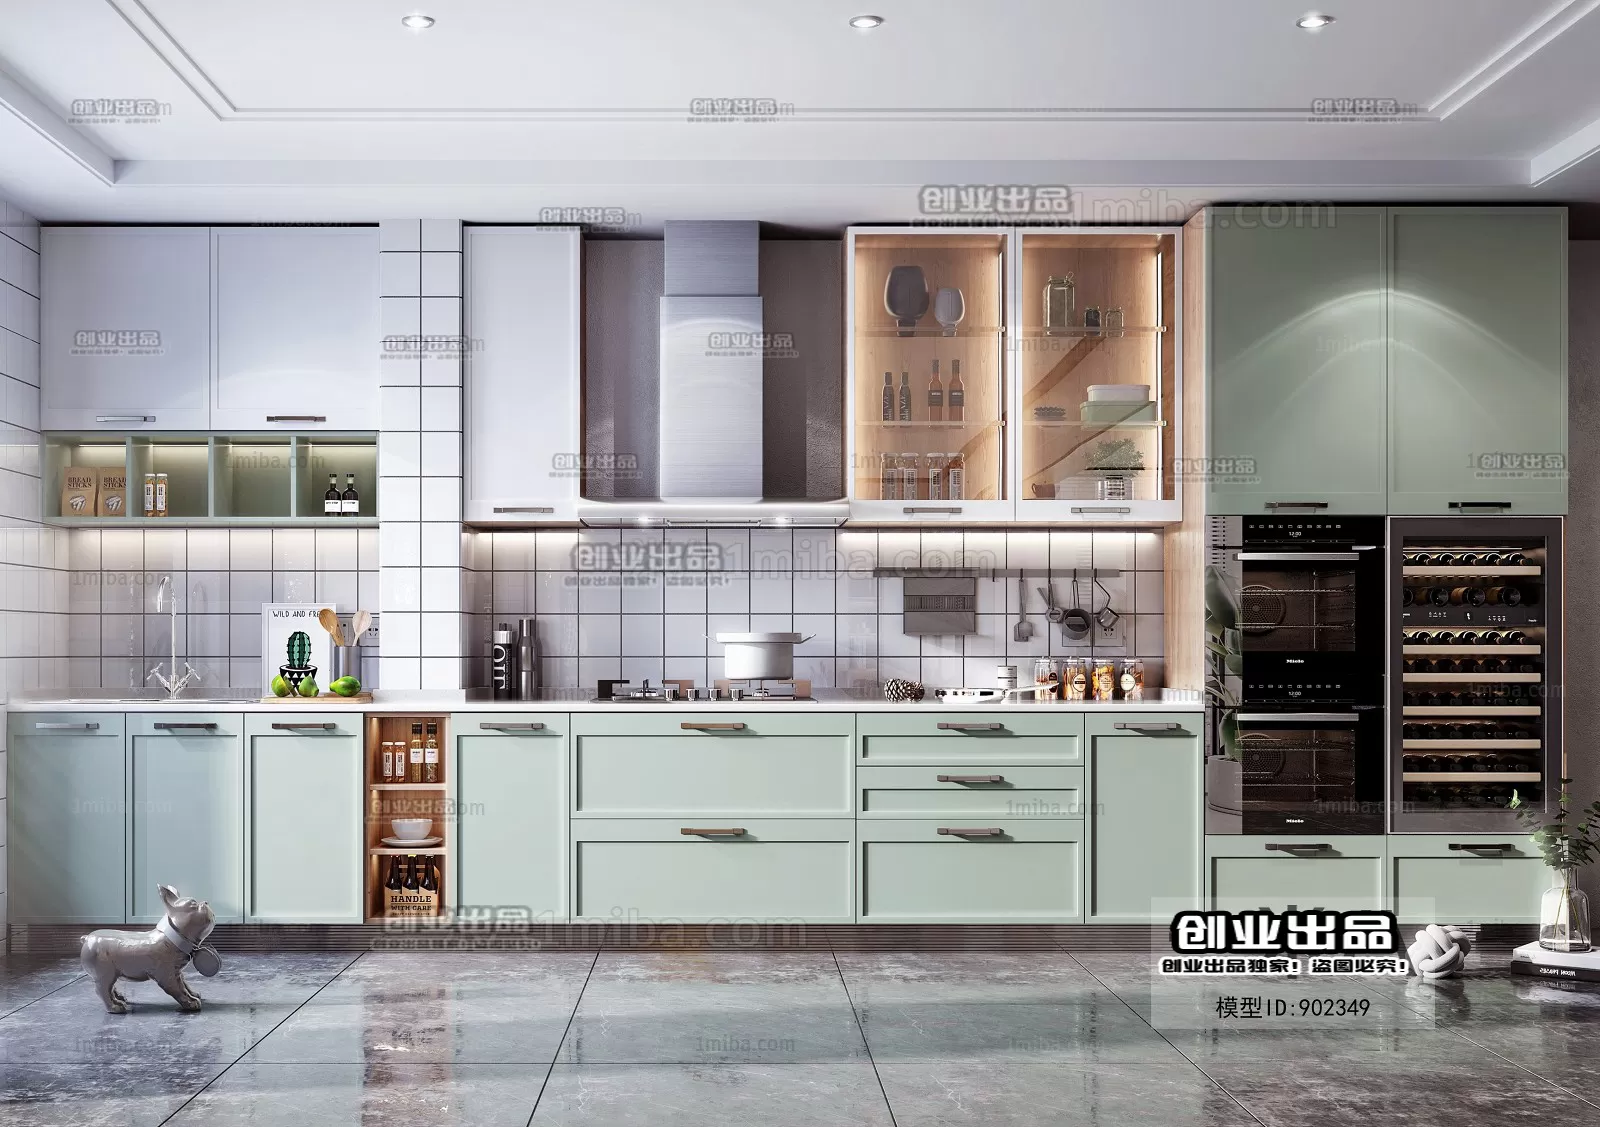 Kitchen – Scandinavian architecture – 021